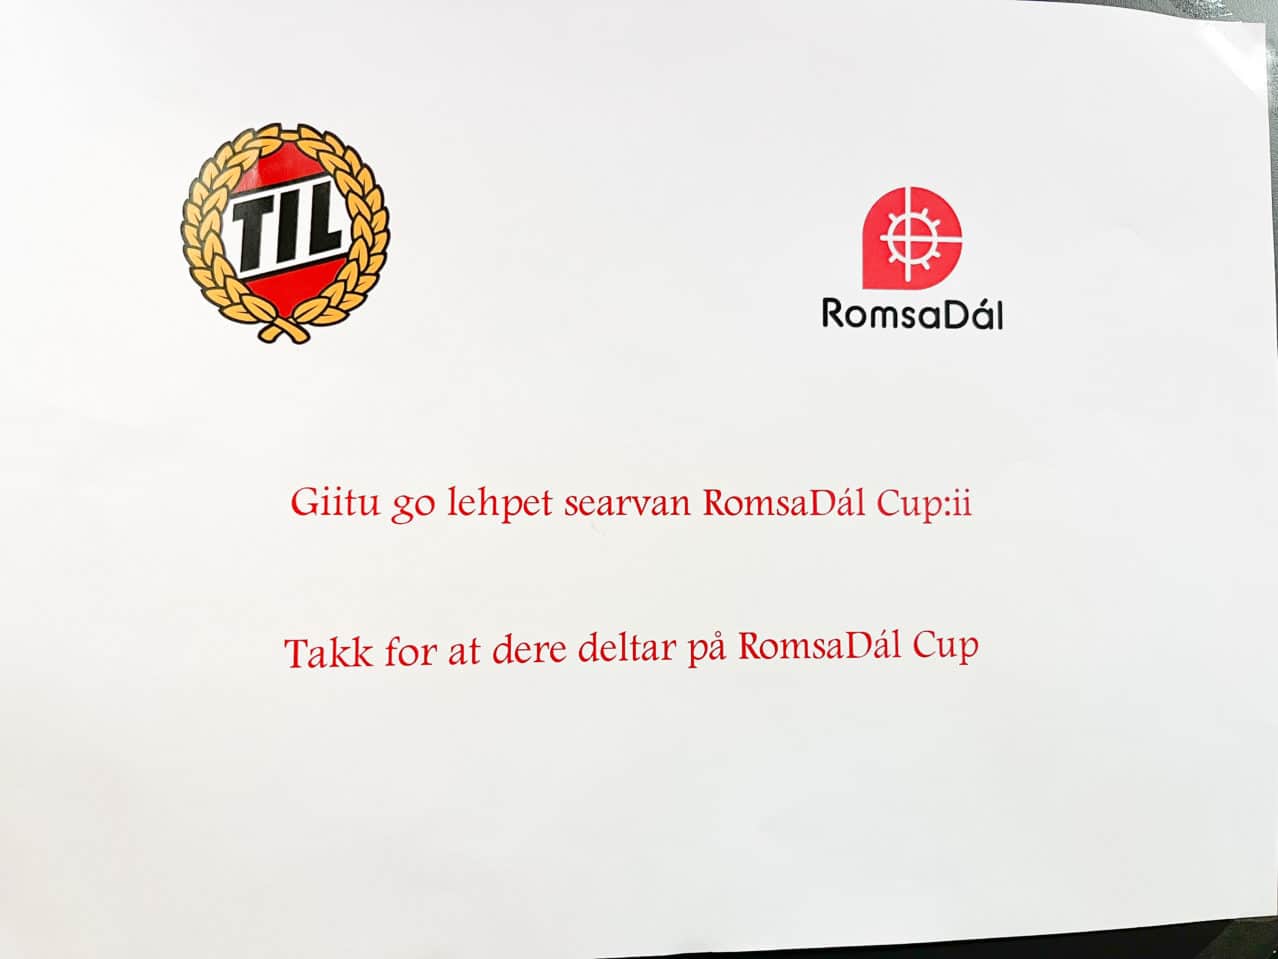 TIL logo og RomsaDál logo med tekst under